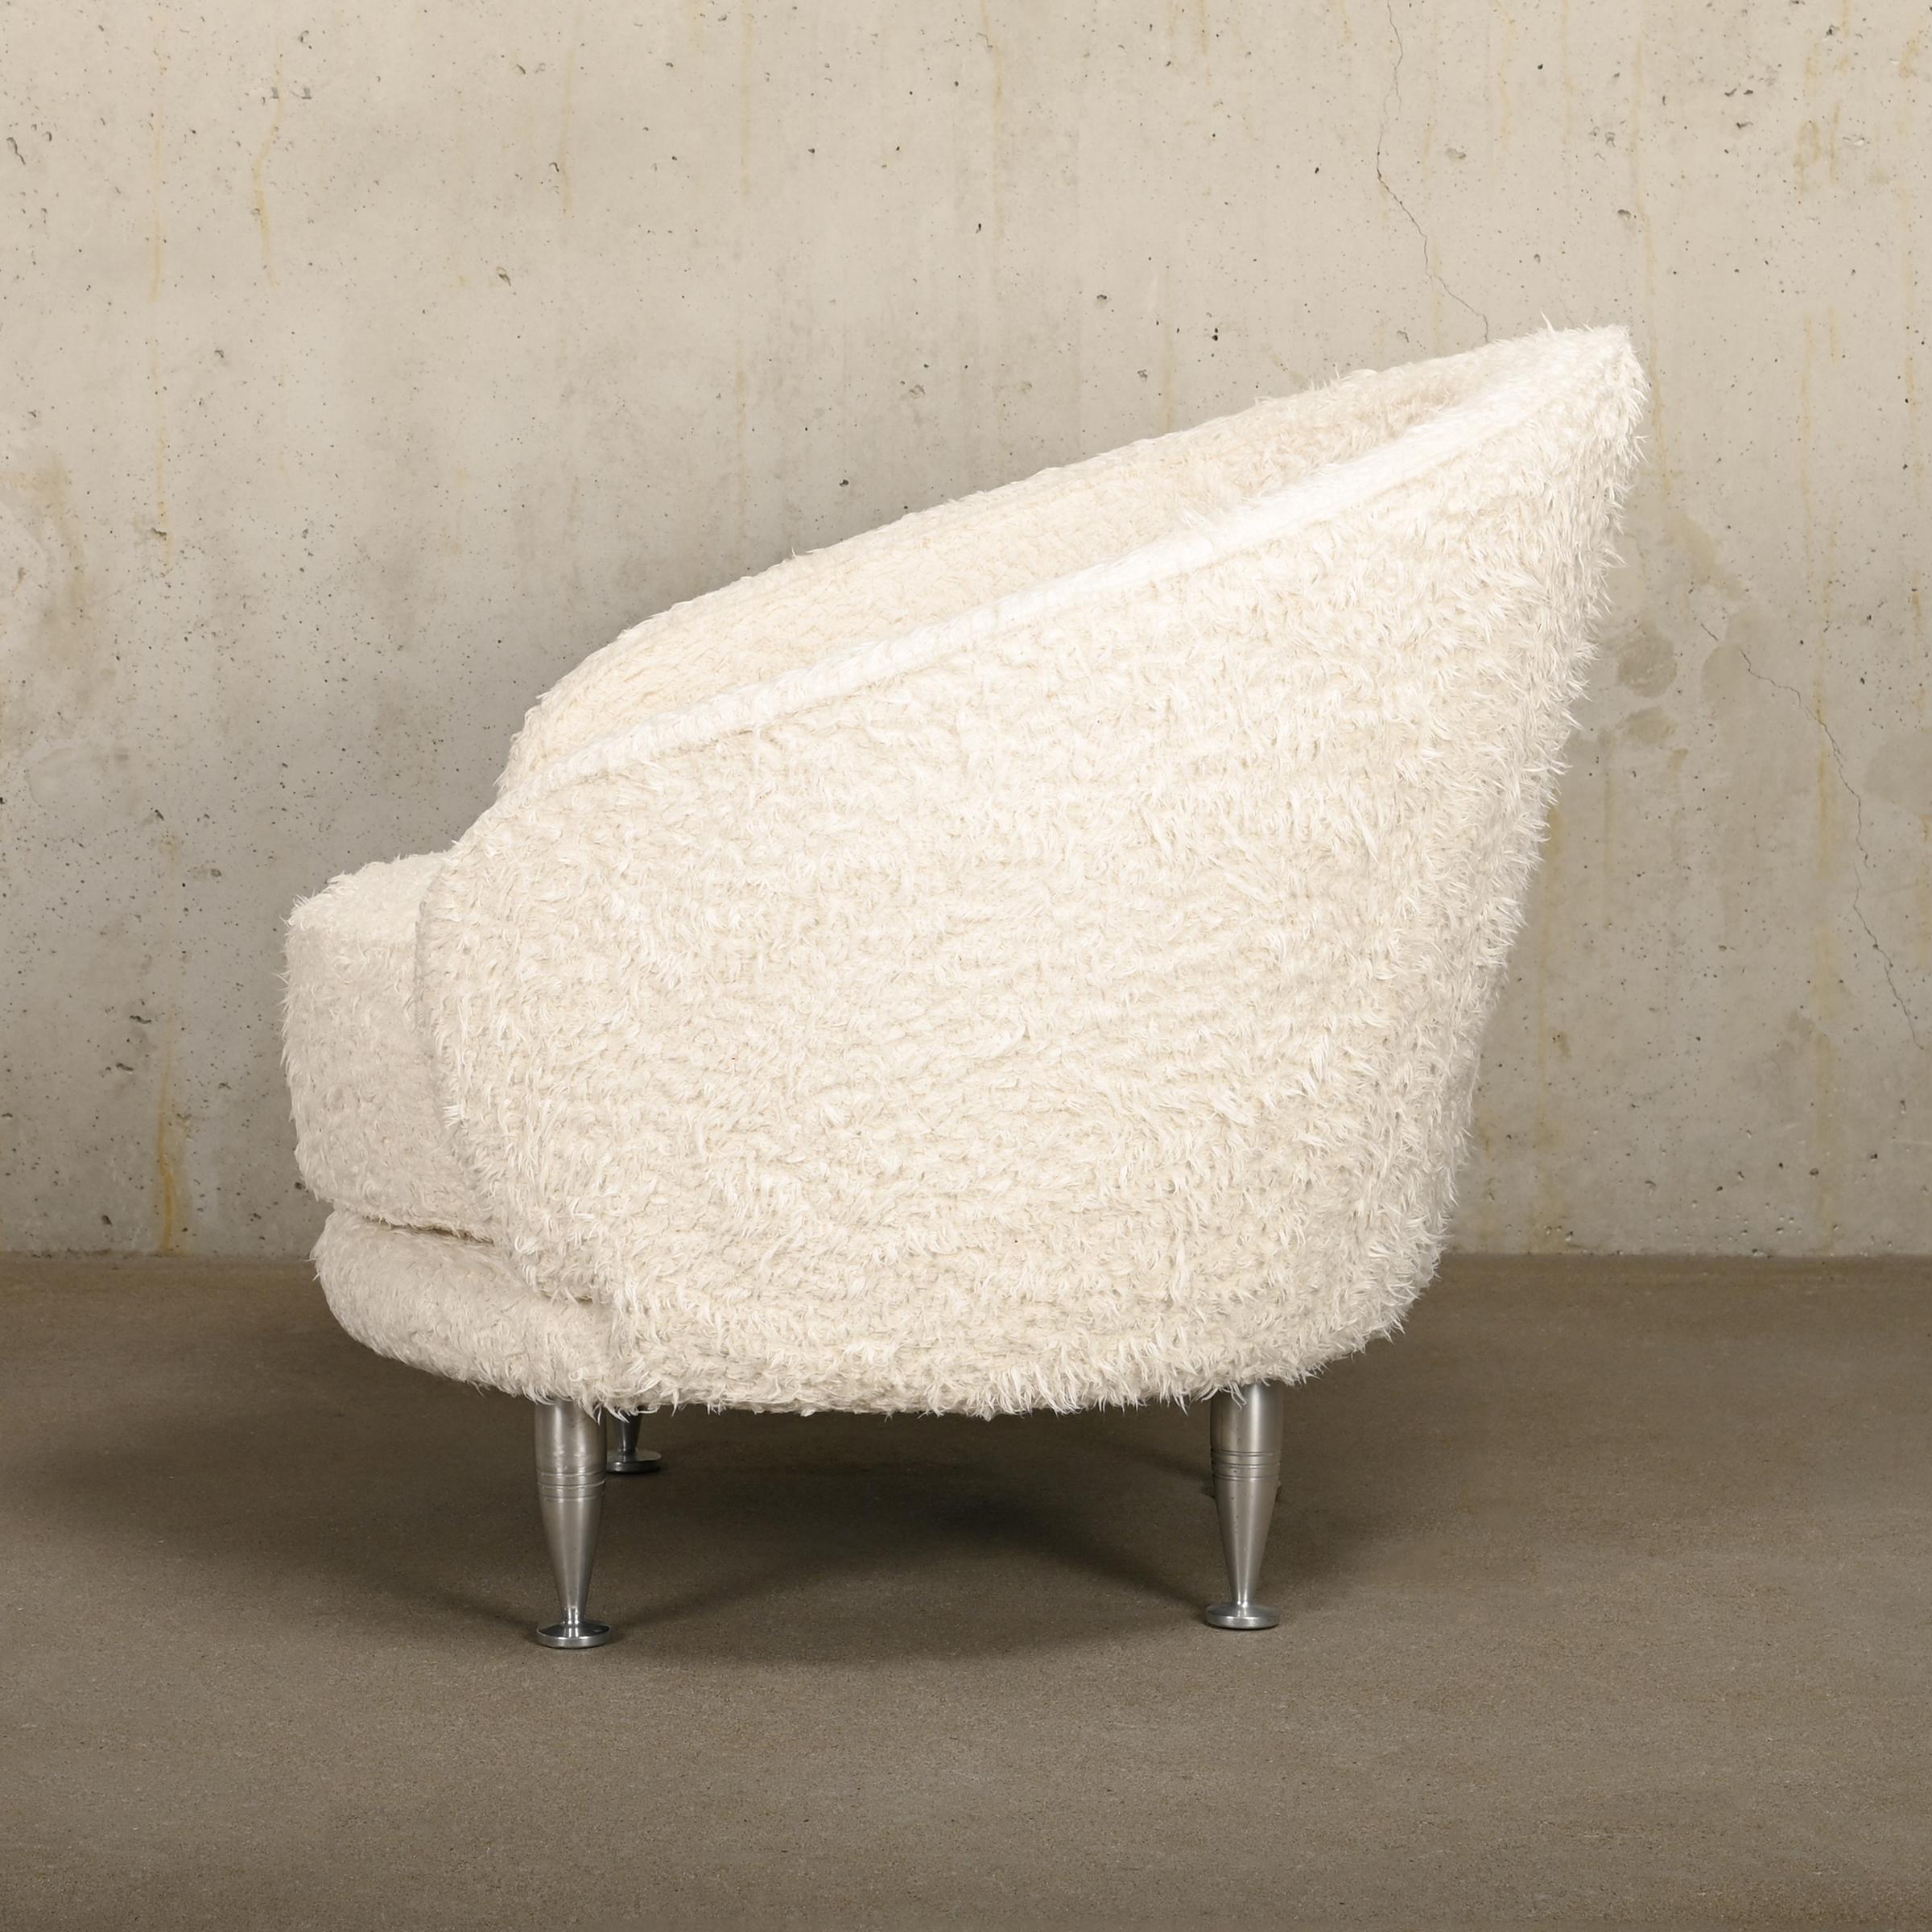 Elegantes Sesselmodell 'New Tone', entworfen von Massimo Iosa Ghini für Moroso, Italien. Sitzschale aus Holz, bezogen mit spannungsfestem Polyurethanschaum mit unterschiedlicher Dichte und Polyesterfasern. Der Stuhl wurde mit einem verspielten, aber